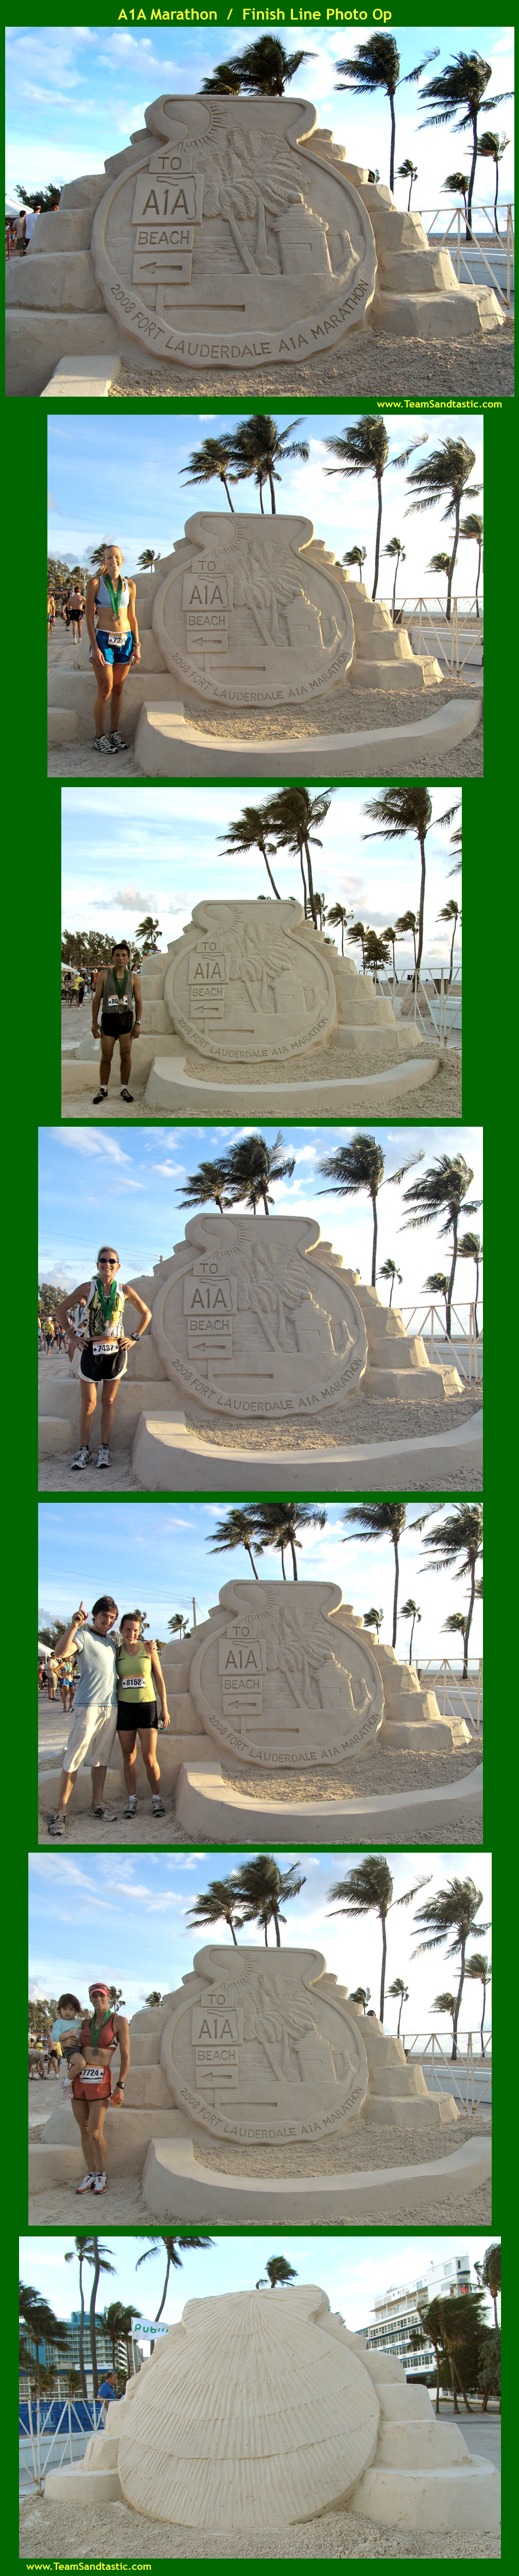 Ft. Lauderdale Marathon Sand Sculpture